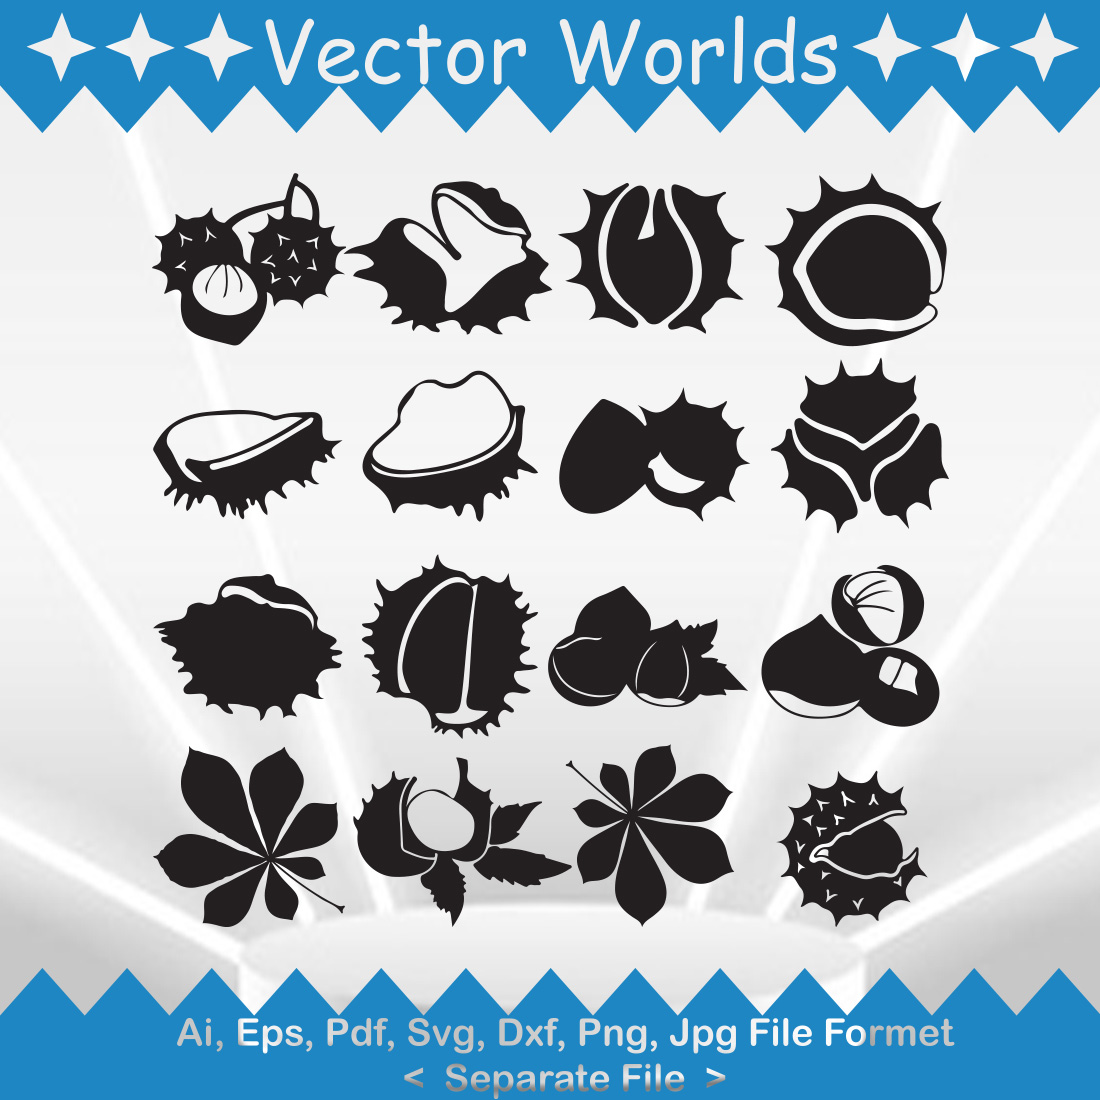 Chestnut SVG Vector Design cover image.